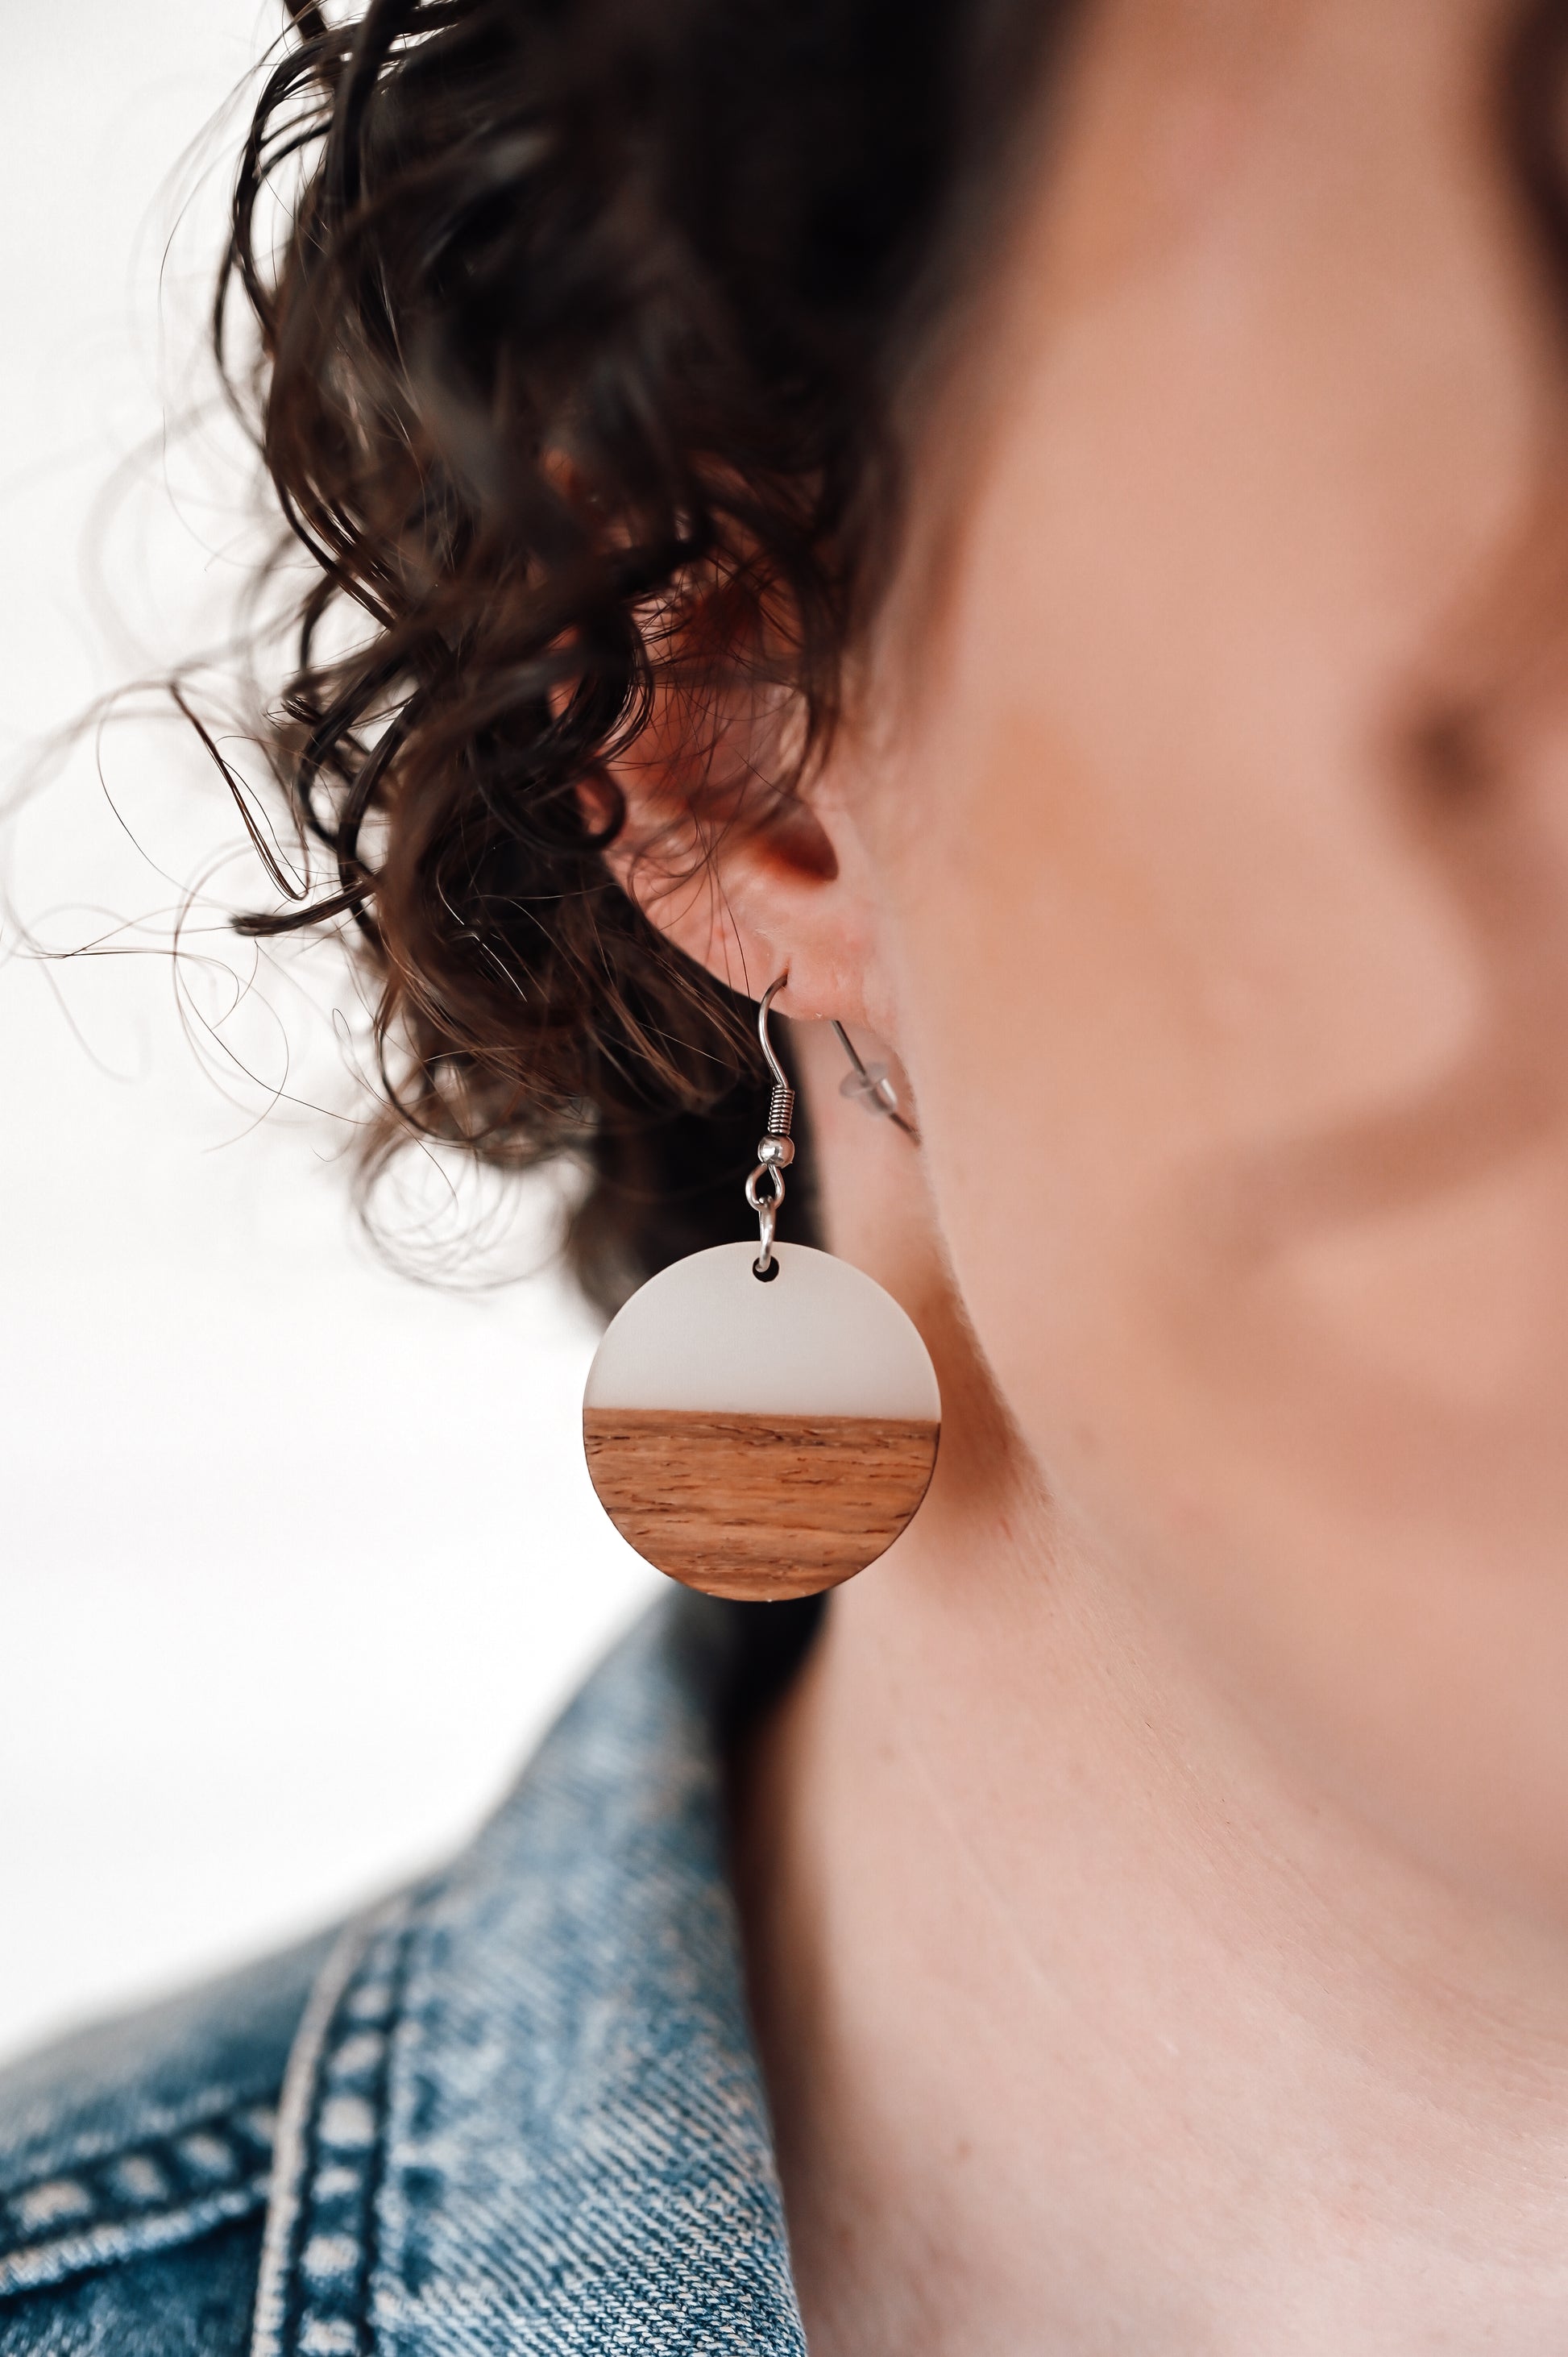 Wood + Resin Earrings